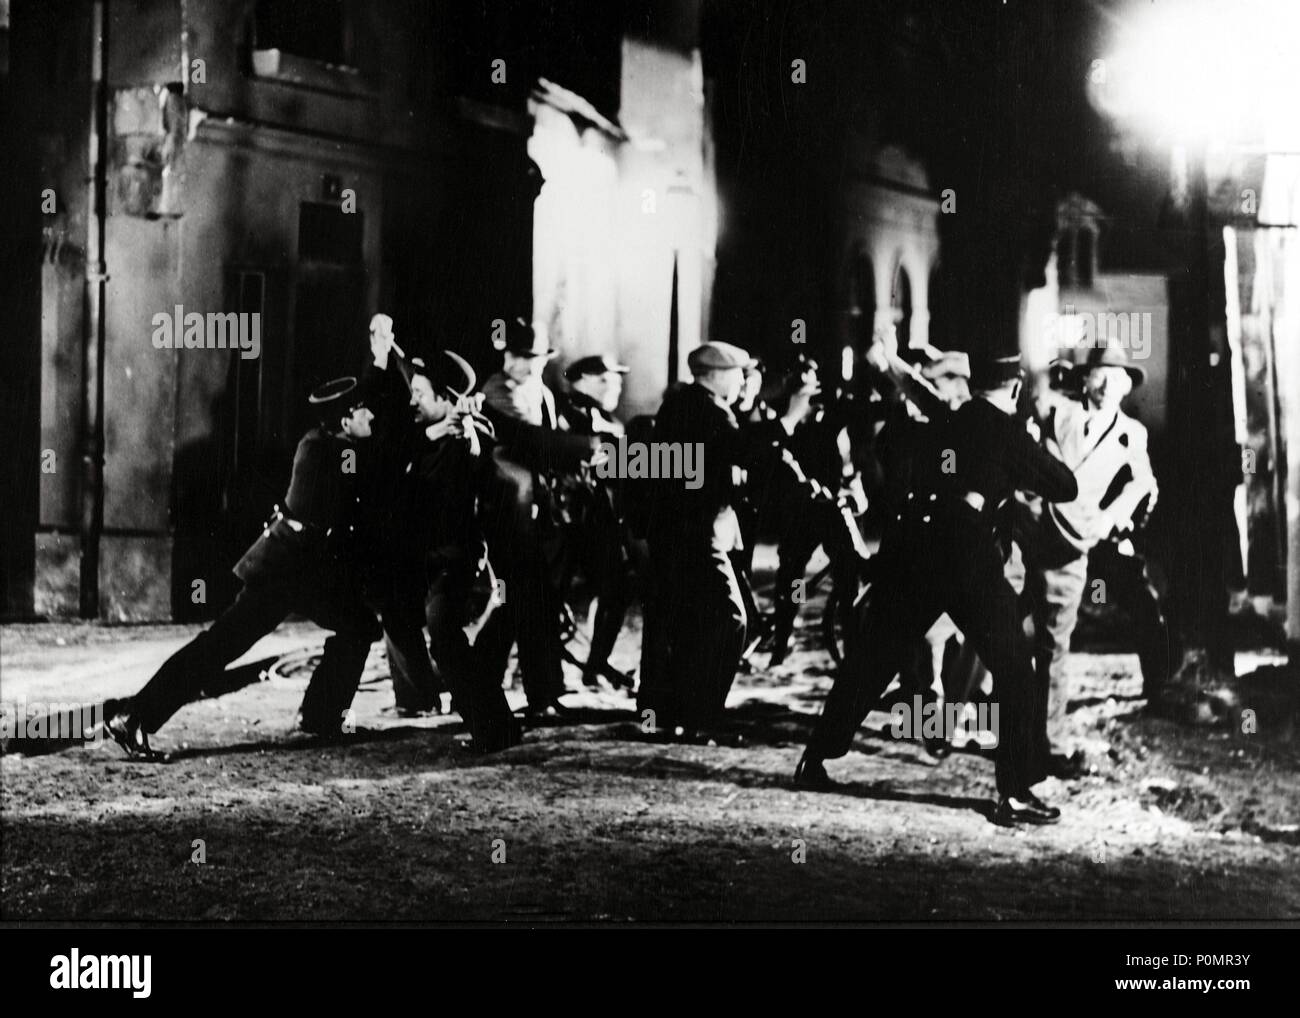 Original Film Title: SOUS LES TOITS DE PARIS.  English Title: UNDER THE ROOFS OF PARIS.  Film Director: RENE CLAIR.  Year: 1930. Stock Photo